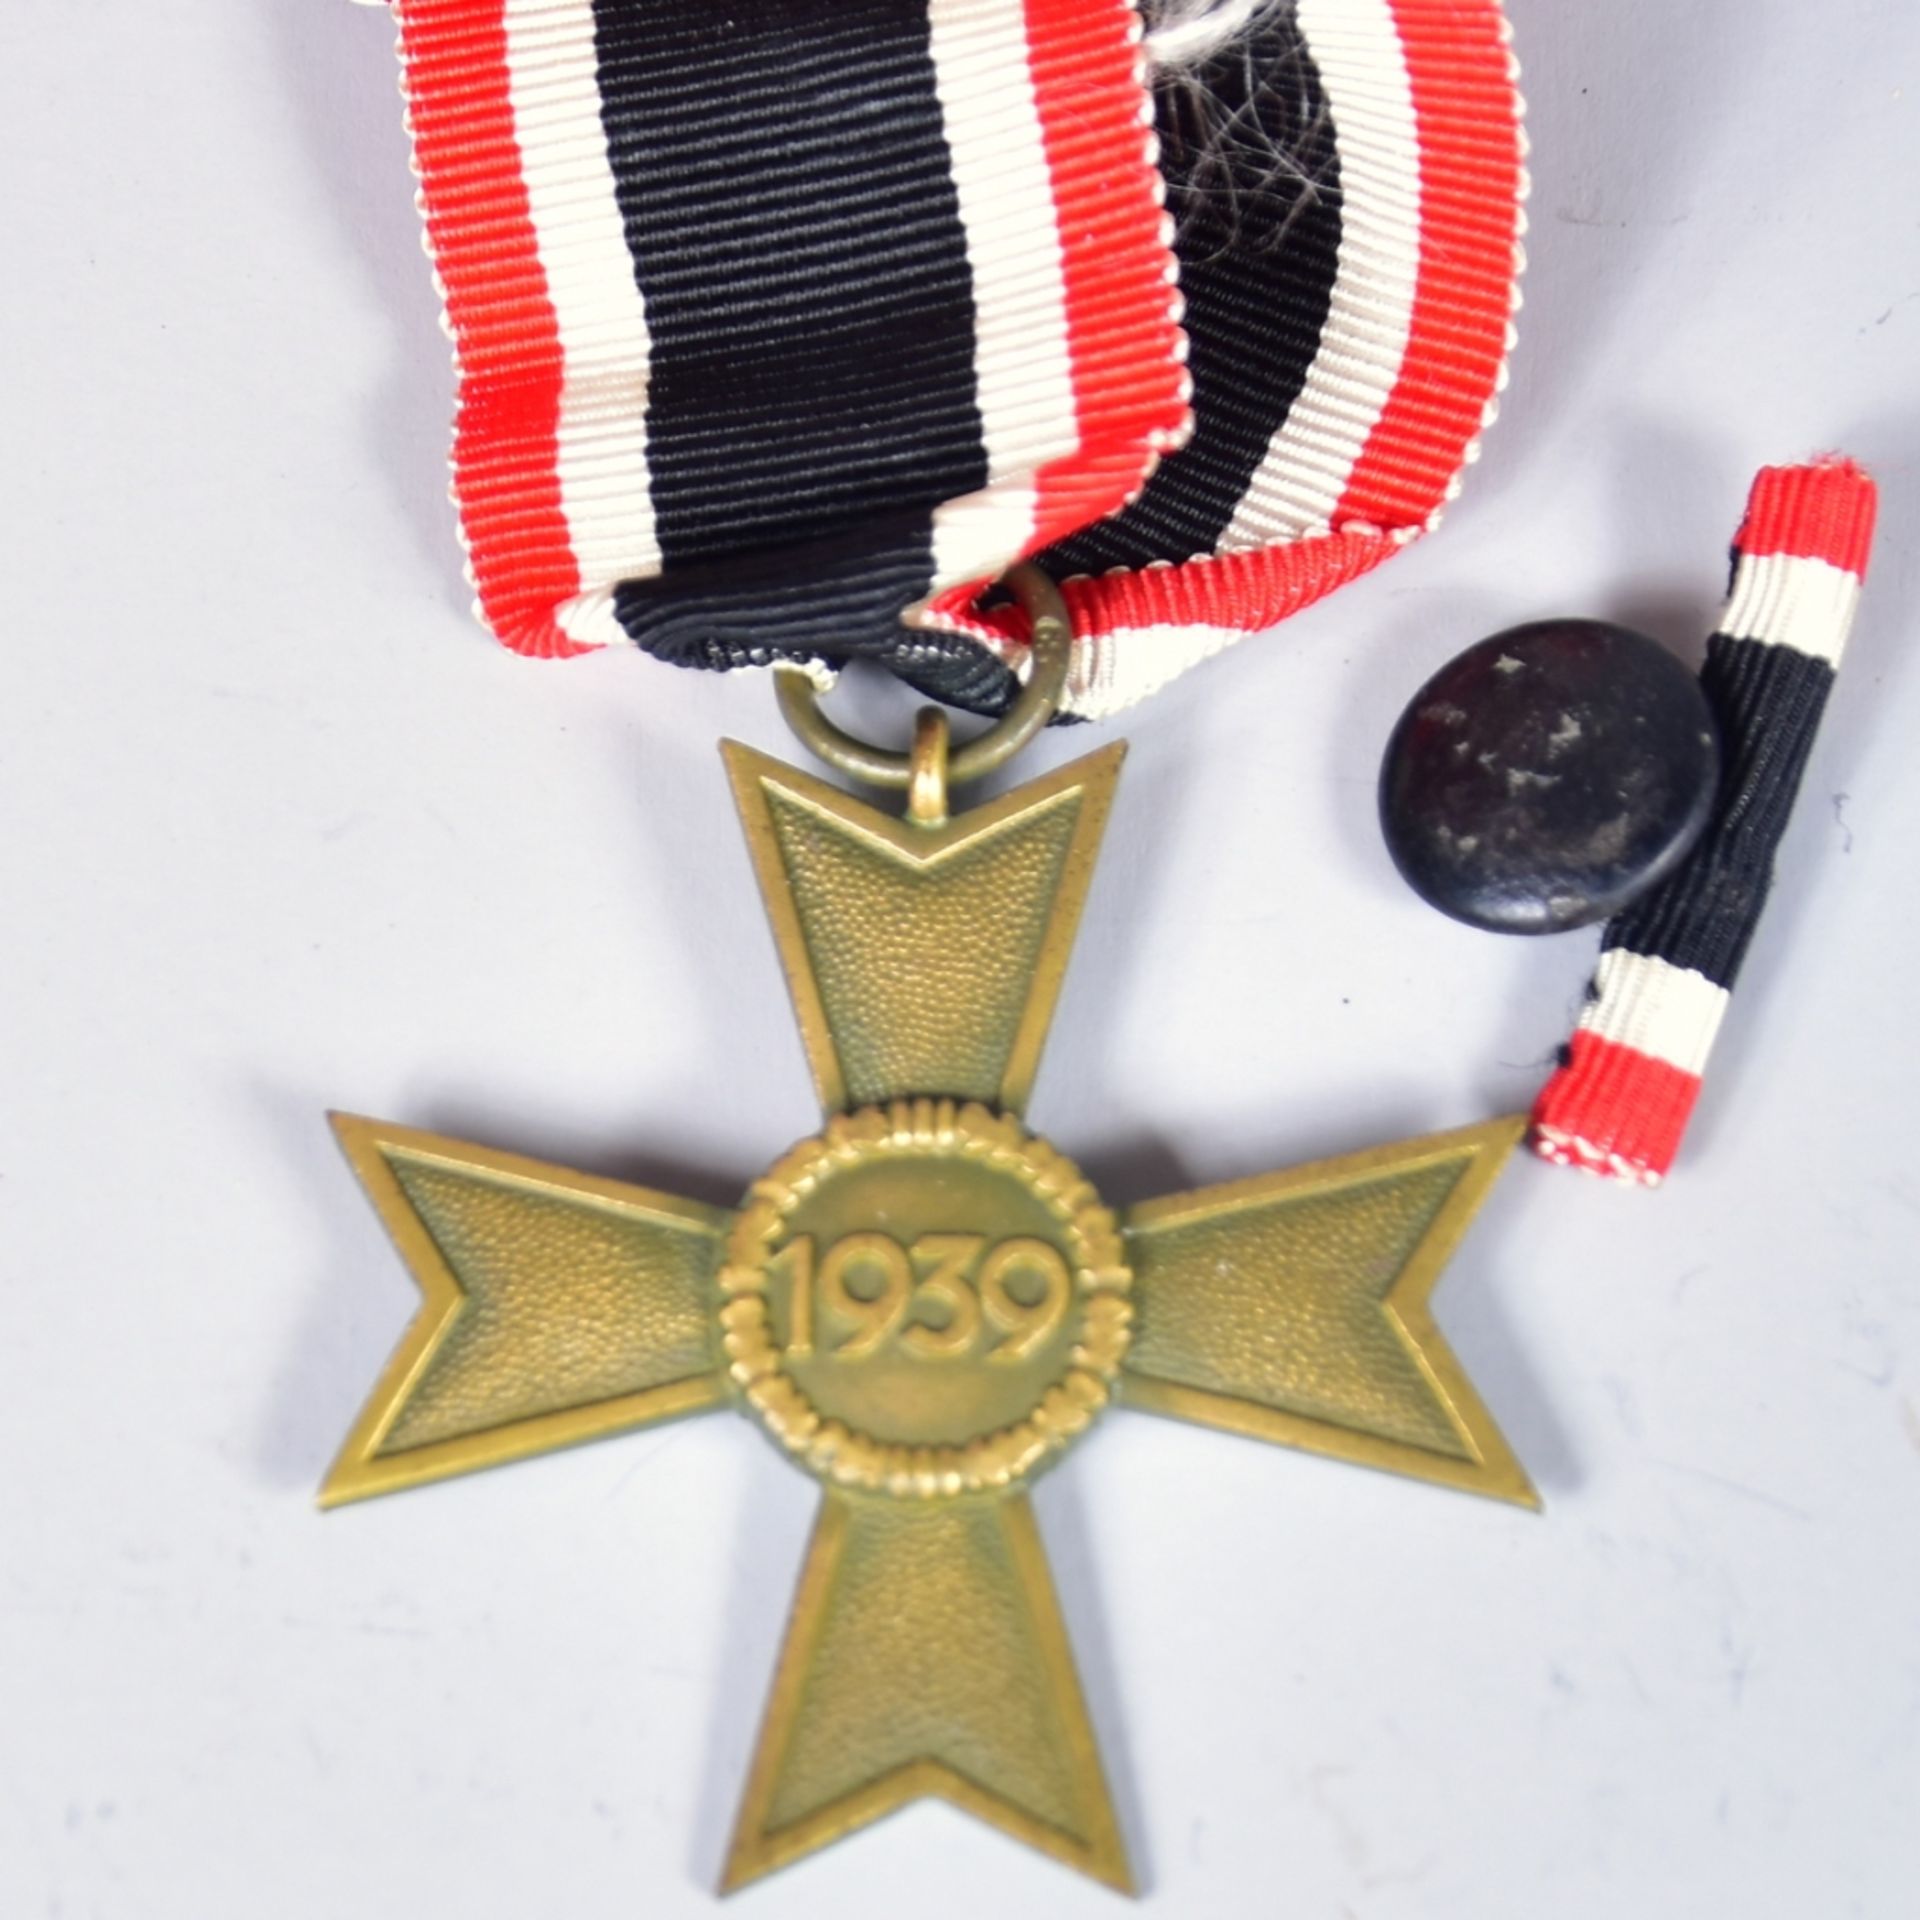 Kriegsverdienstkreuz 1939 am Band, mit Miniatur zum Einknöpfen- - -23.00 % buyer's premium on the